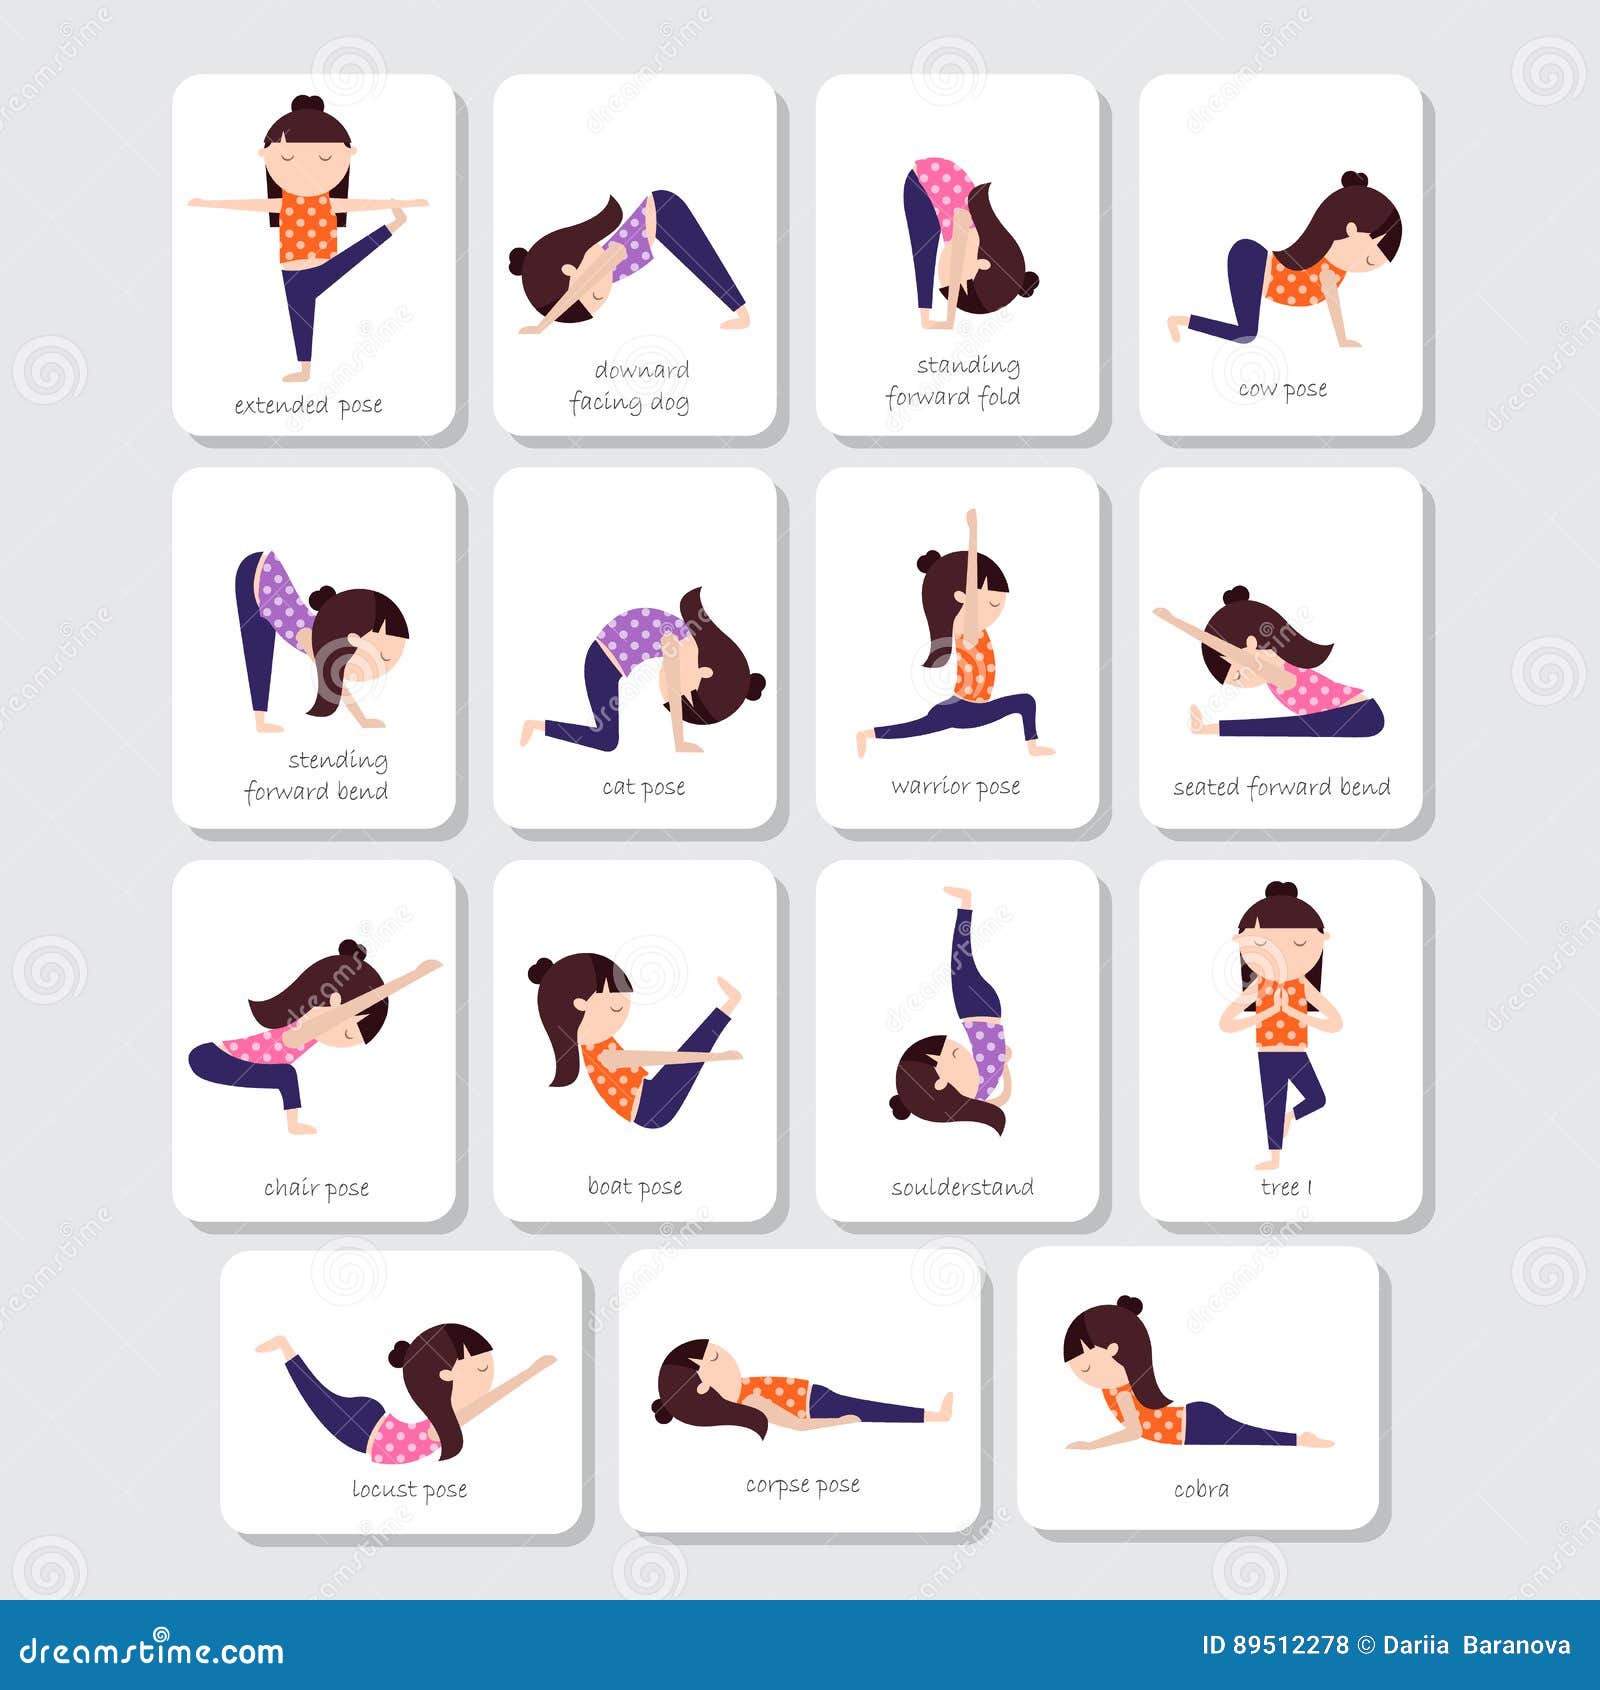 Yoga Poses for Kids Printable Poster Yoga Studio Art Decor Calm Down Corner  Printable - Etsy